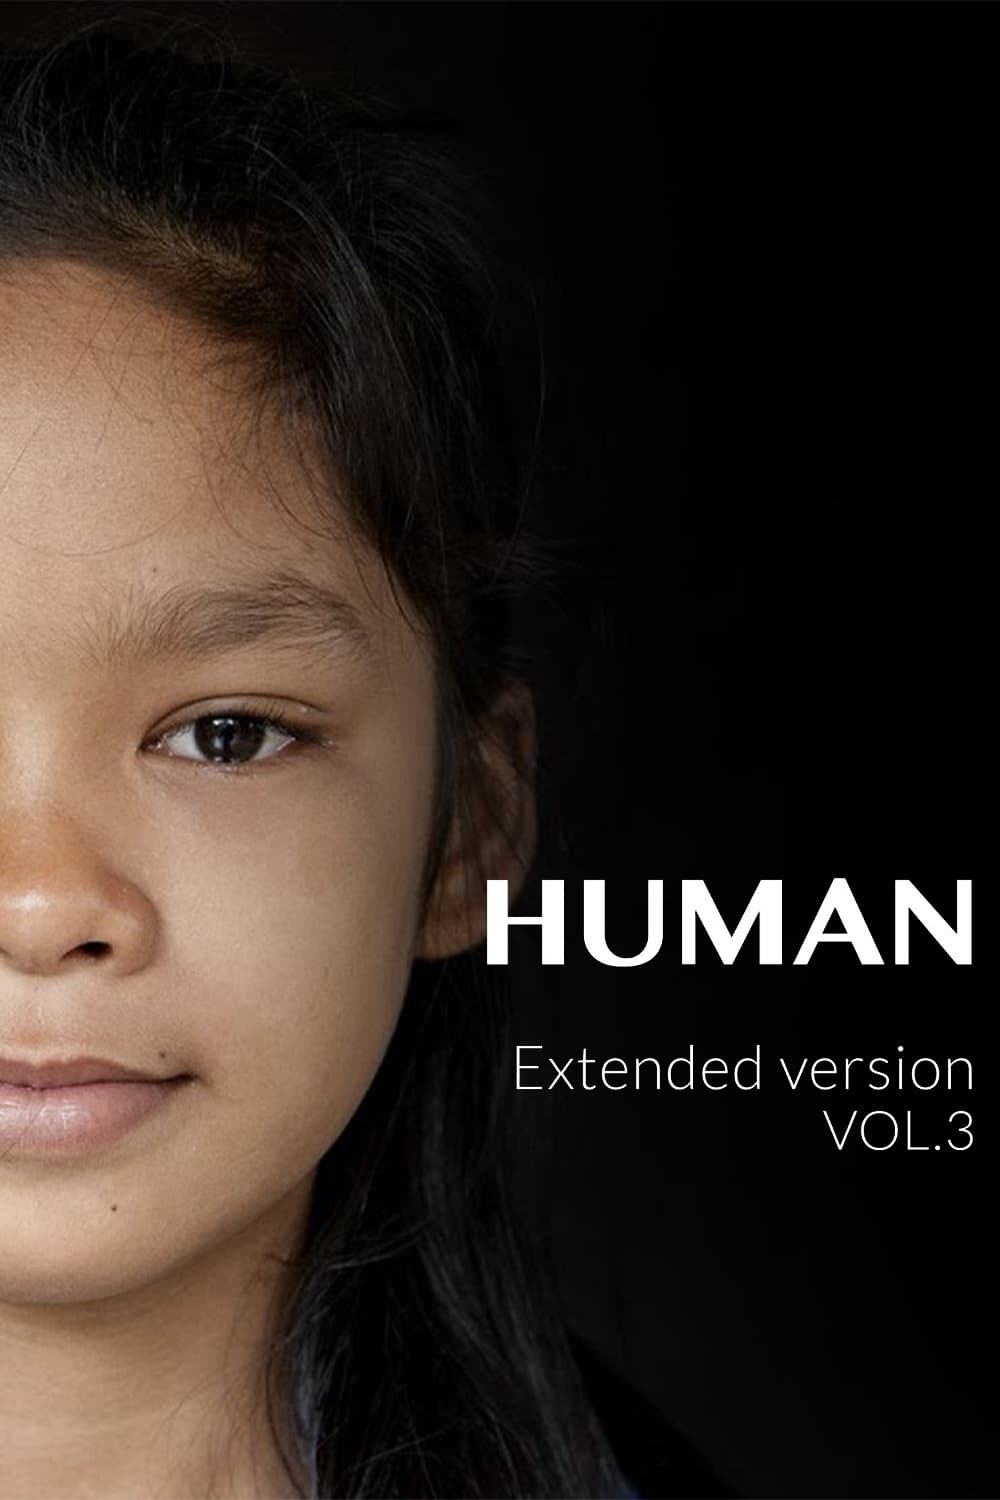 Human Vol. 3